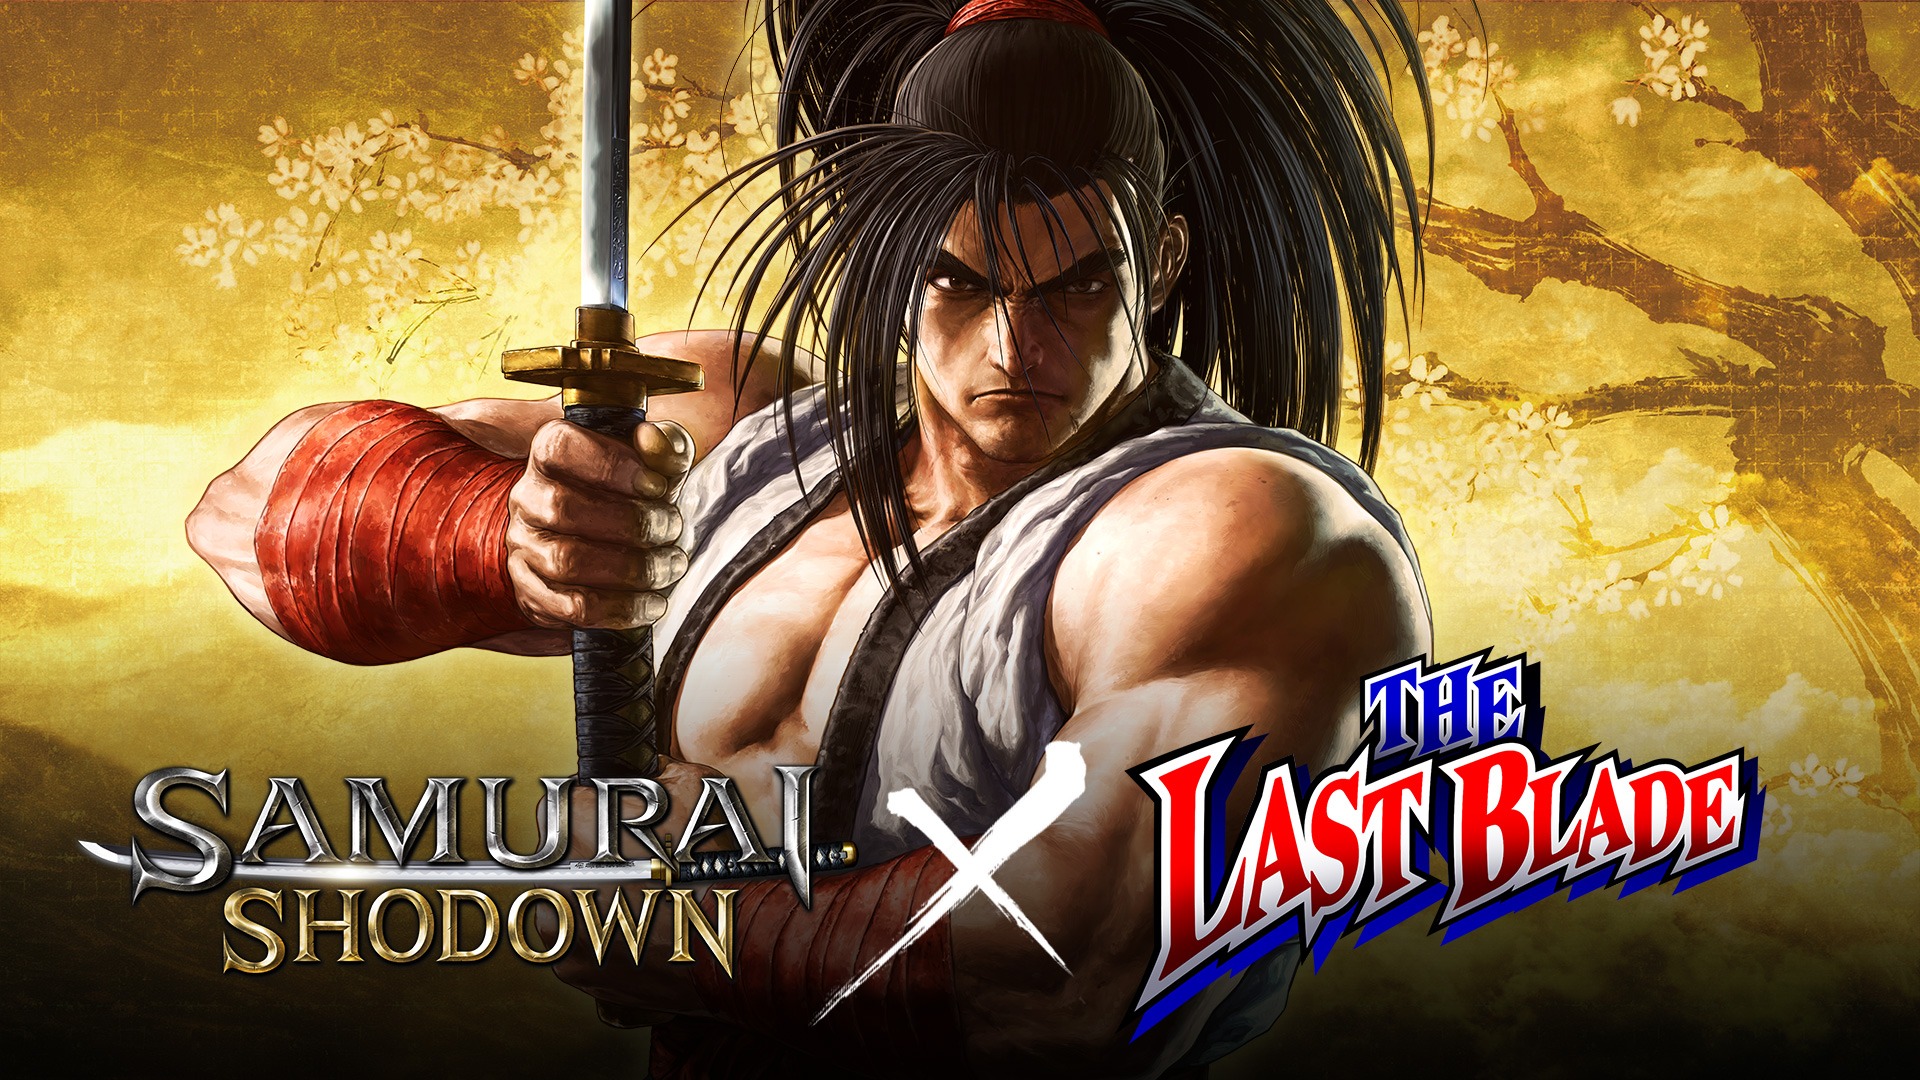 Le personnage Haohmaru pose avec son katana derrière les logos Samurai Shodown et The Last Blade